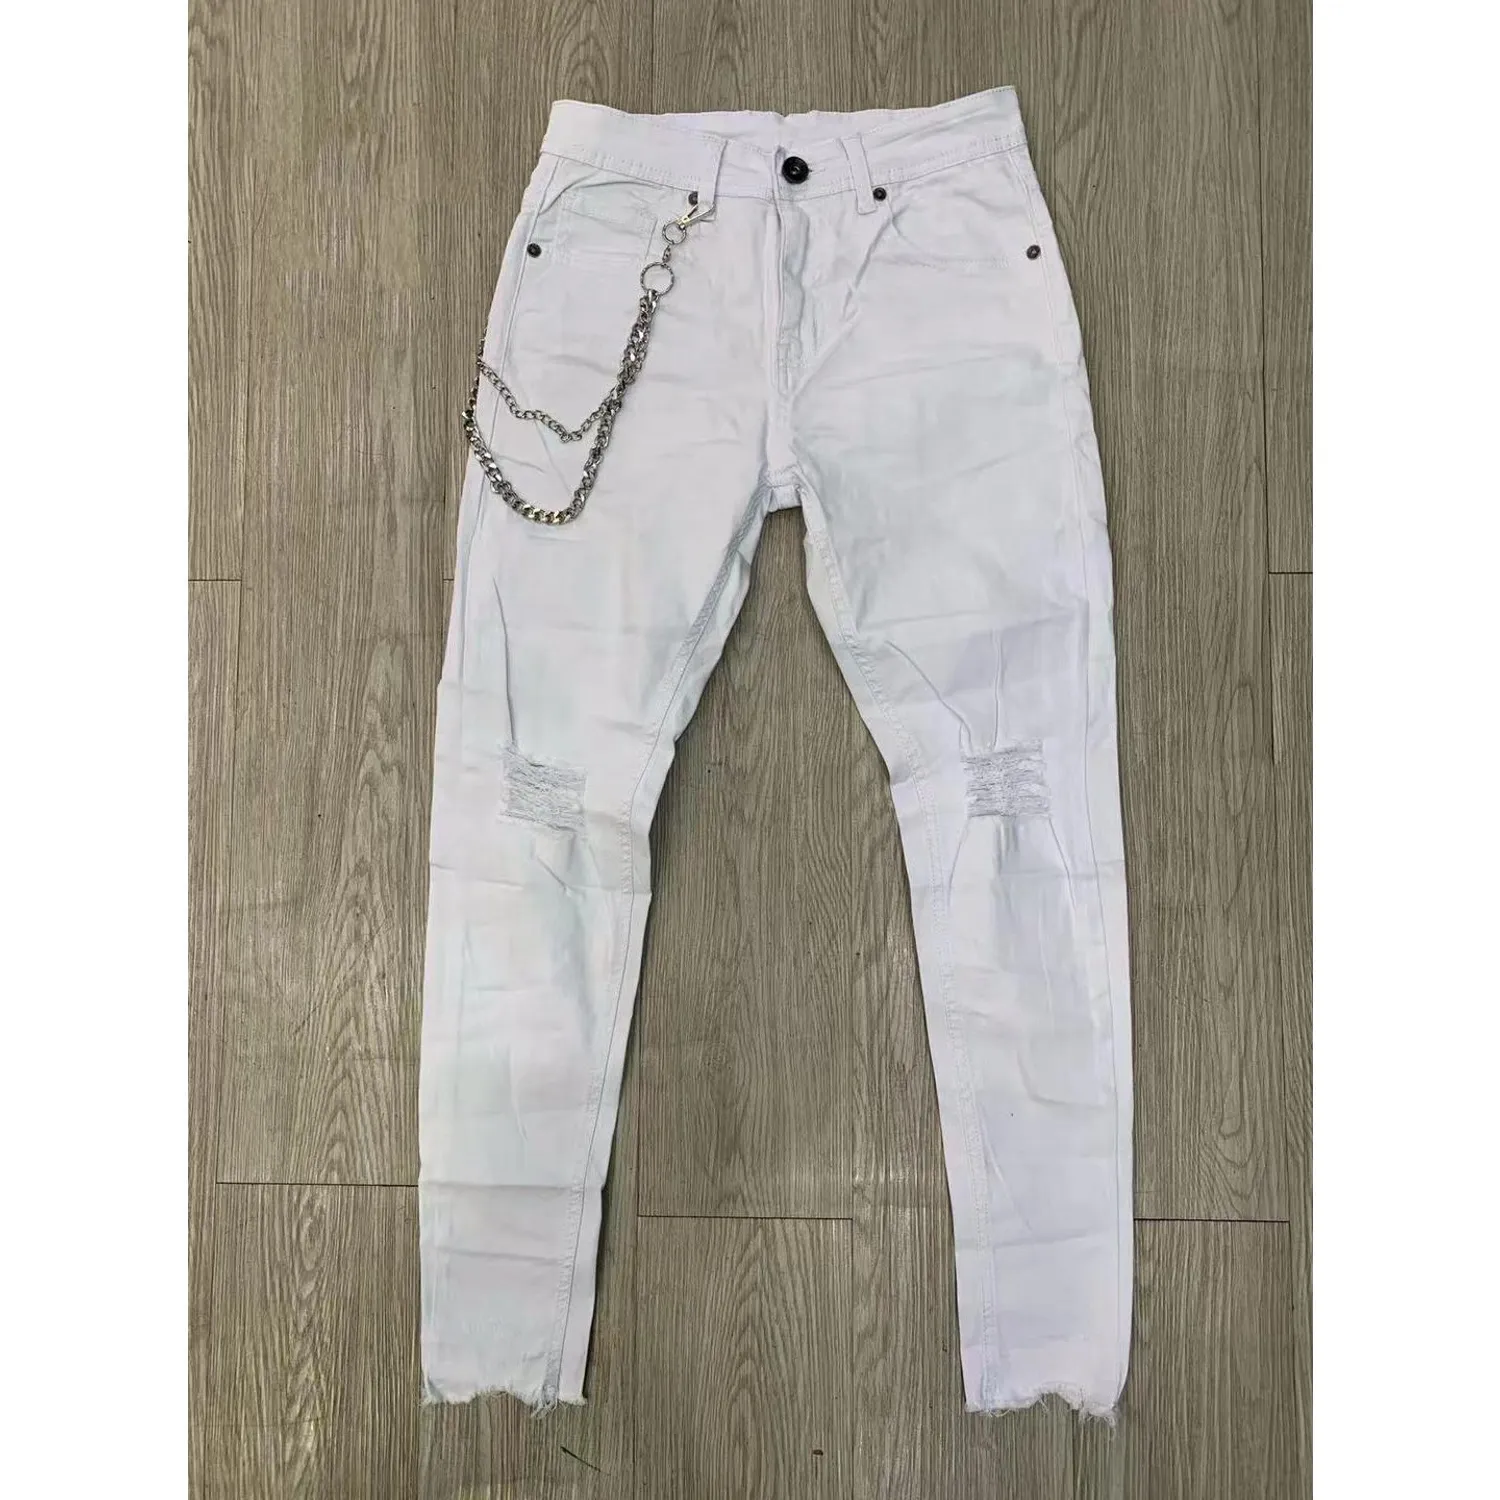 Ανδρικό jean παντελόνι λευκό με αλυσίδα